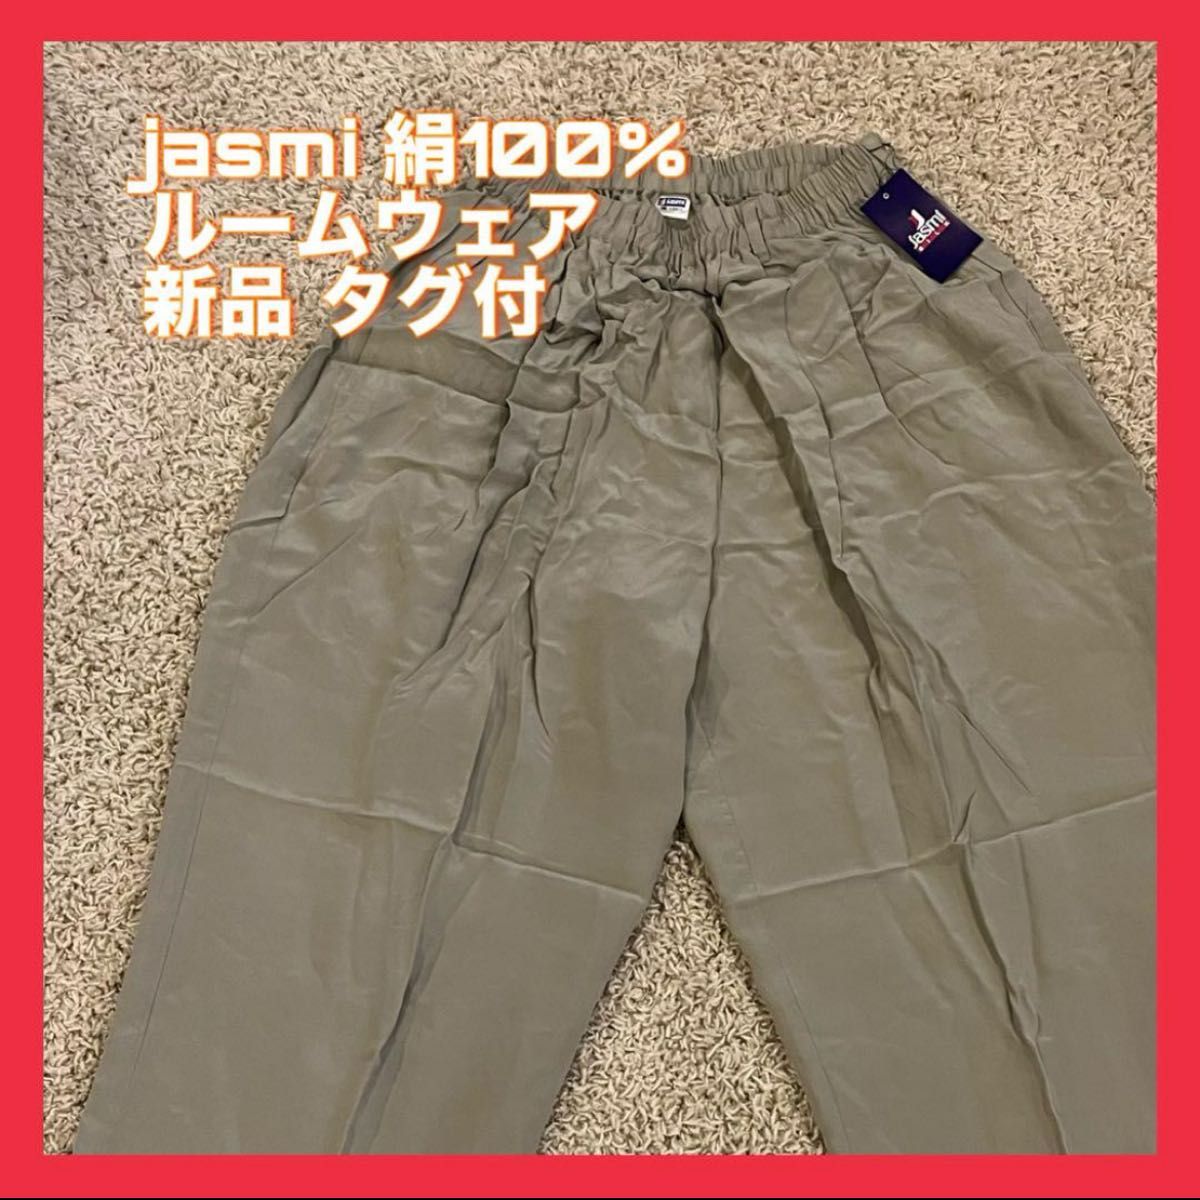 jasmi 絹100% シルク ルームウェア 新品タグ付 フリーサイズ 薄緑 パンツ